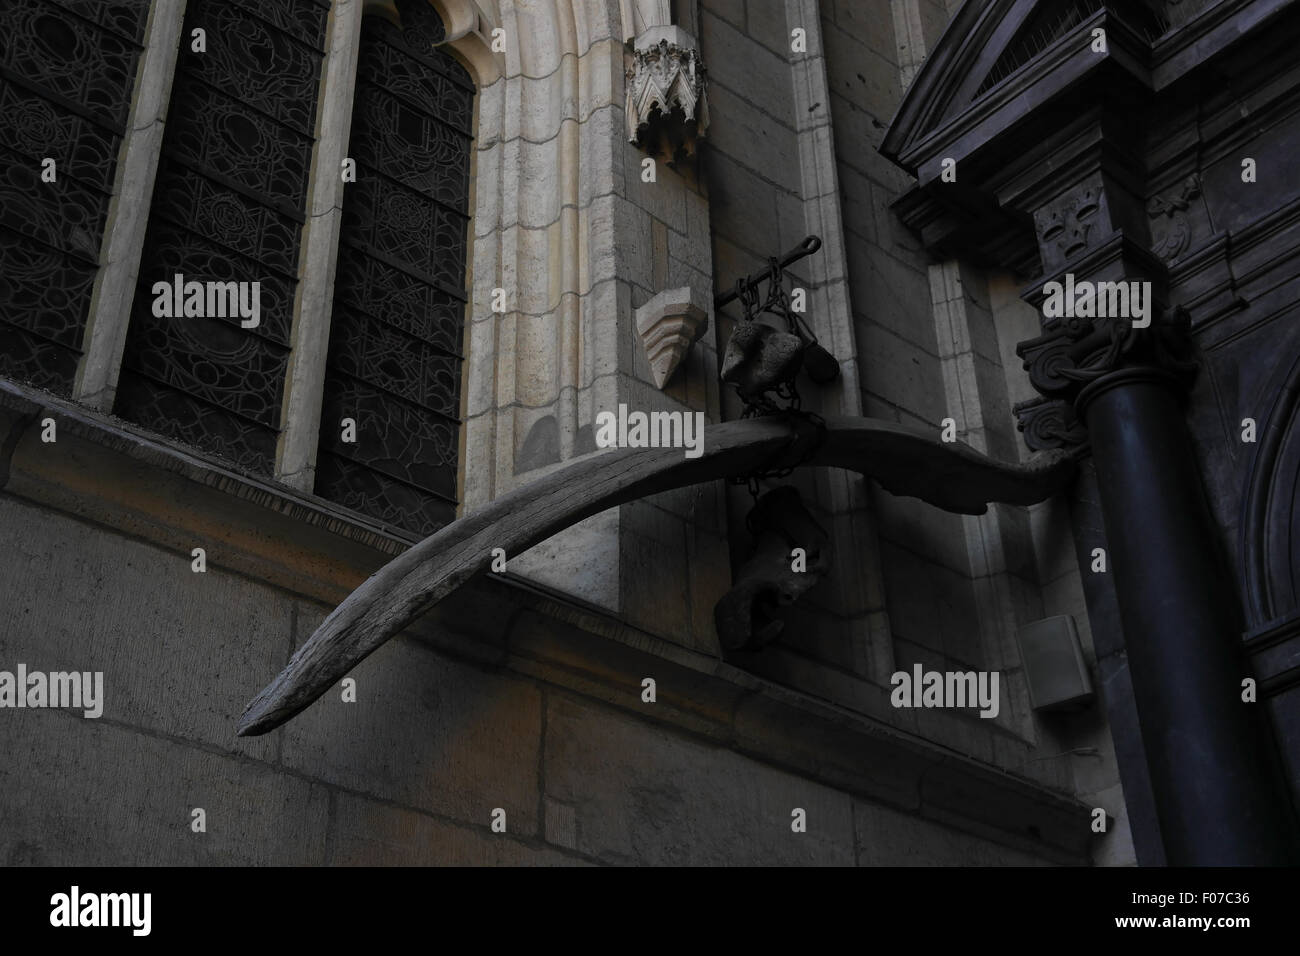 Les os fossilisés (folklore polonais 'Dragon Bones') dans les chaînes suspendues à l'entrée principale de la cathédrale du Wawel, à Cracovie, Pologne Banque D'Images